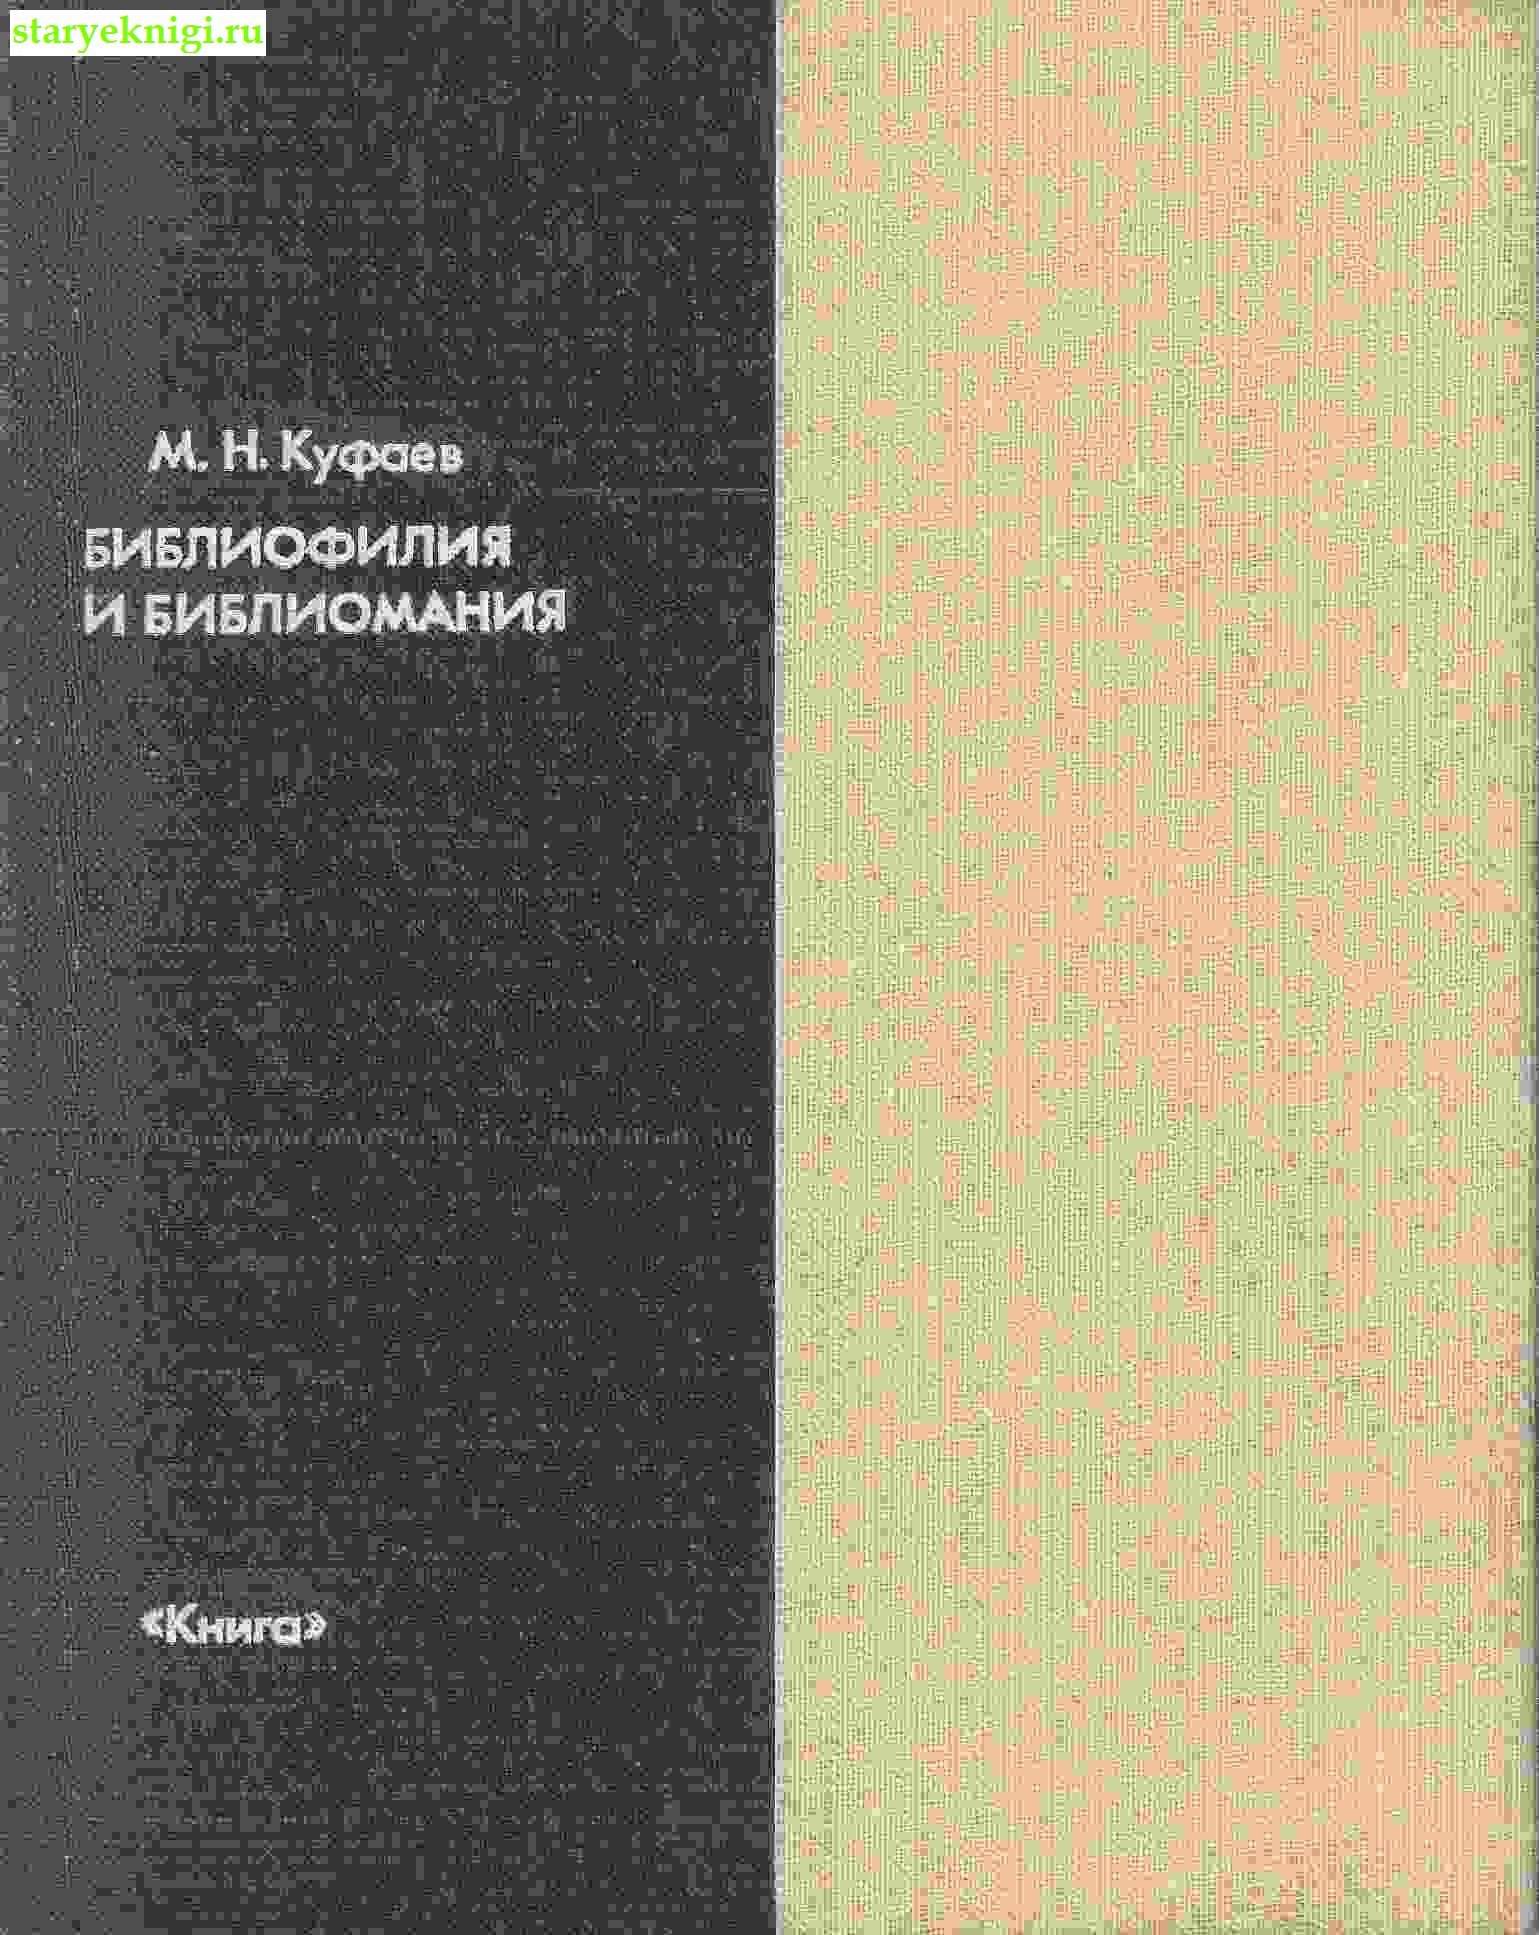 Библиофилия и библиомания, Куфаев М.Н., книга